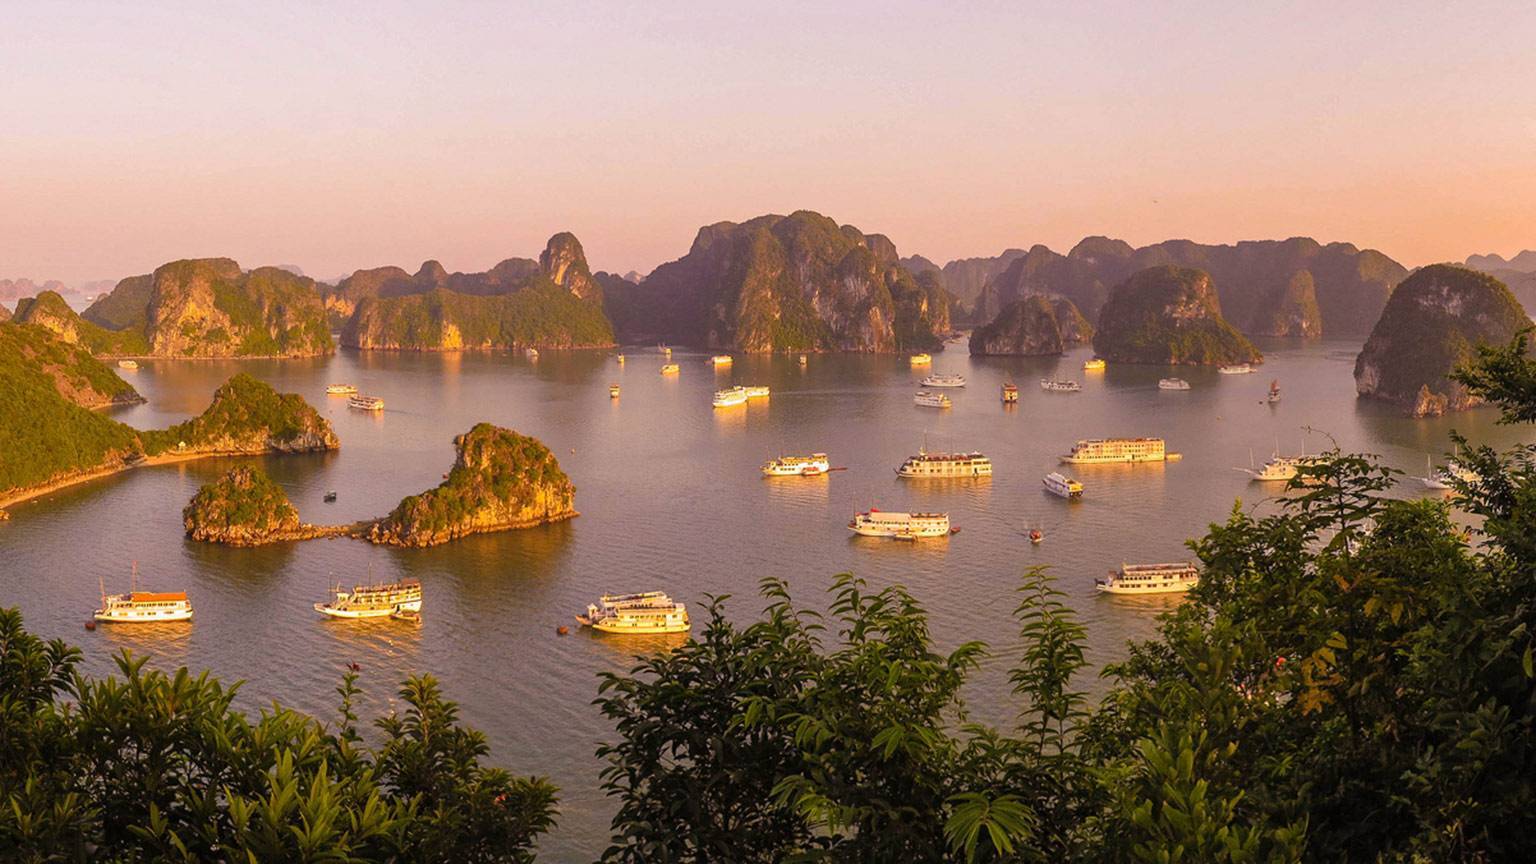 Курорты вьетнама. где лучше отдыхать у моря, с детьми или недорого